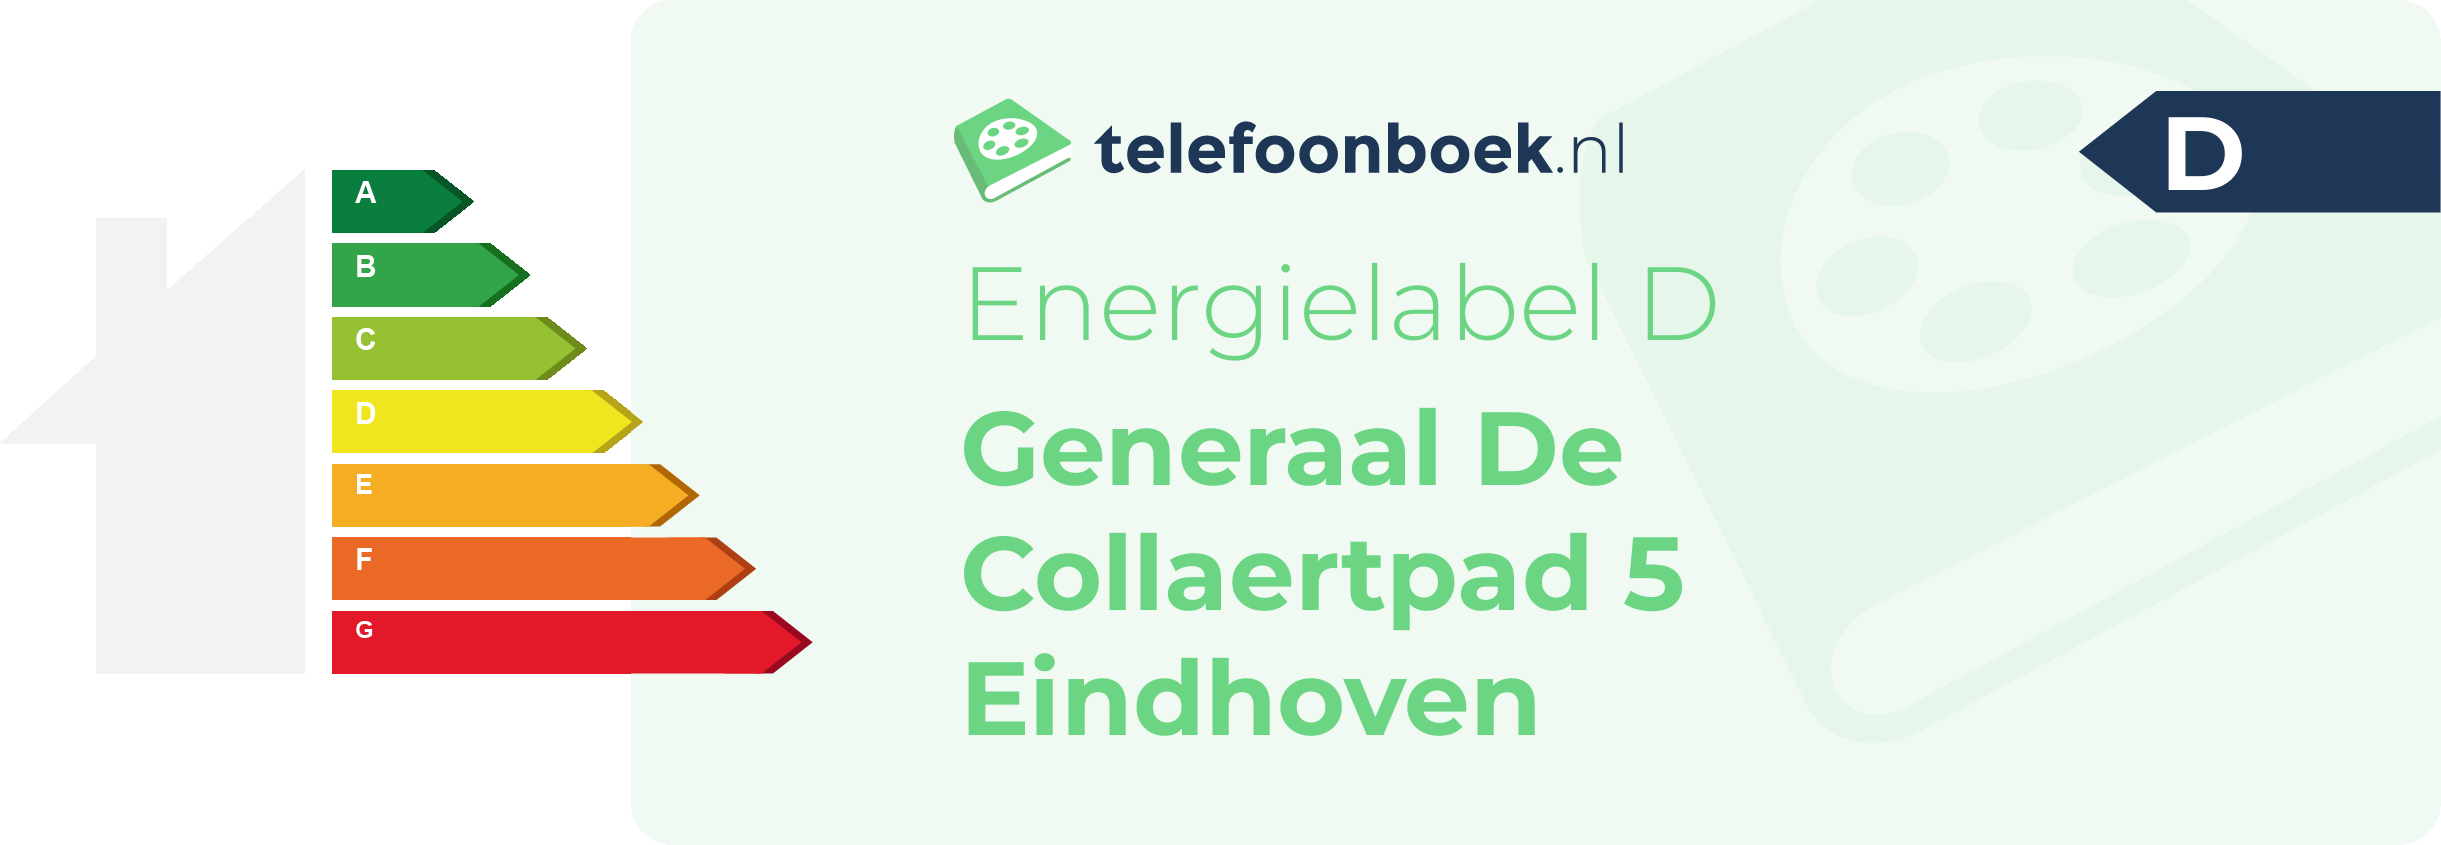 Energielabel Generaal De Collaertpad 5 Eindhoven